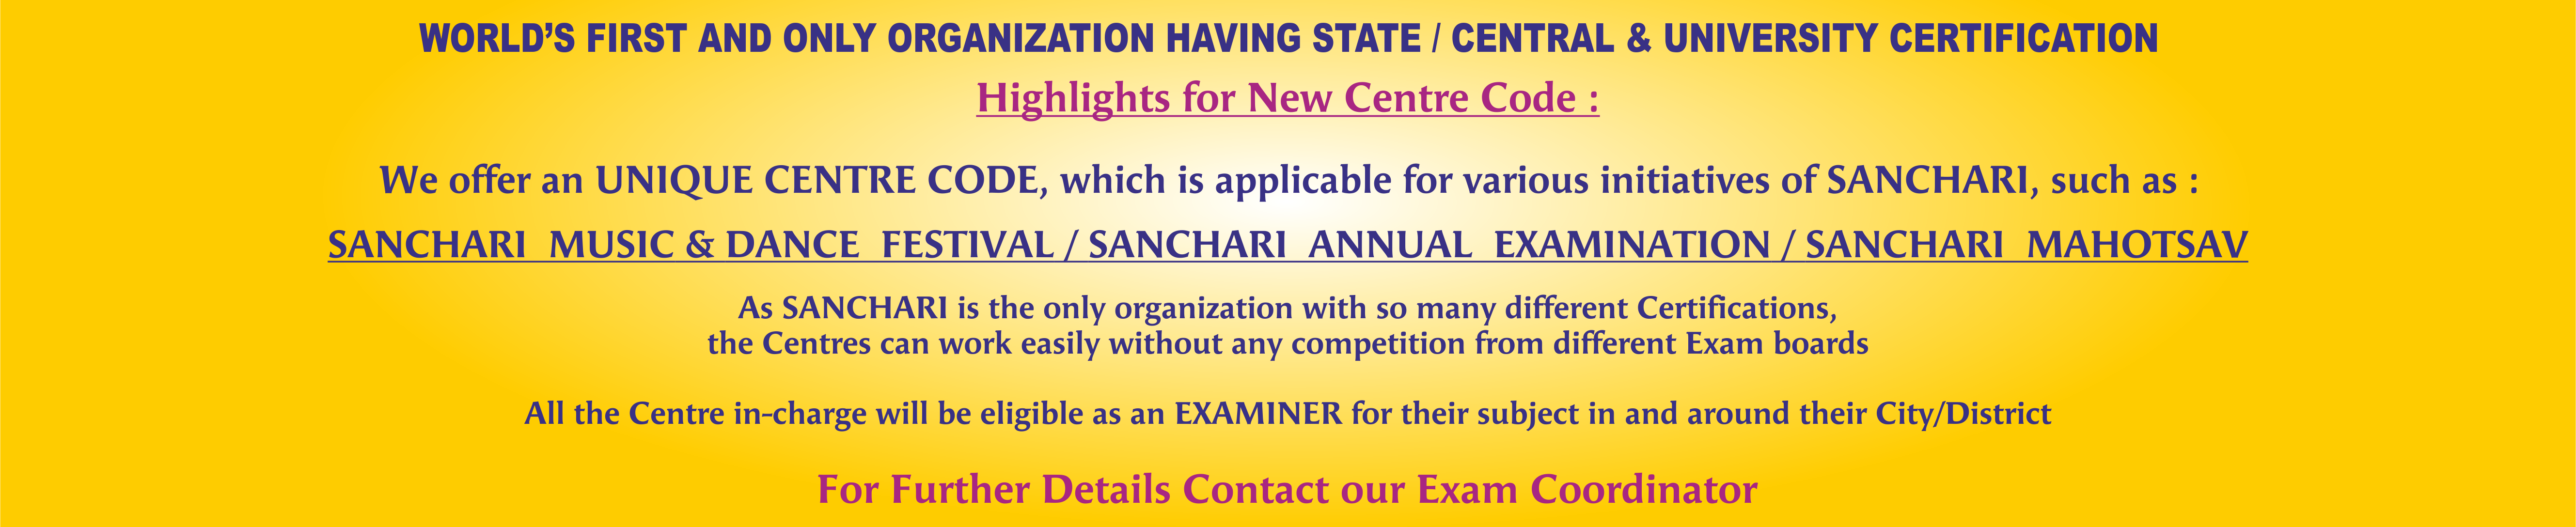 sanchari website template